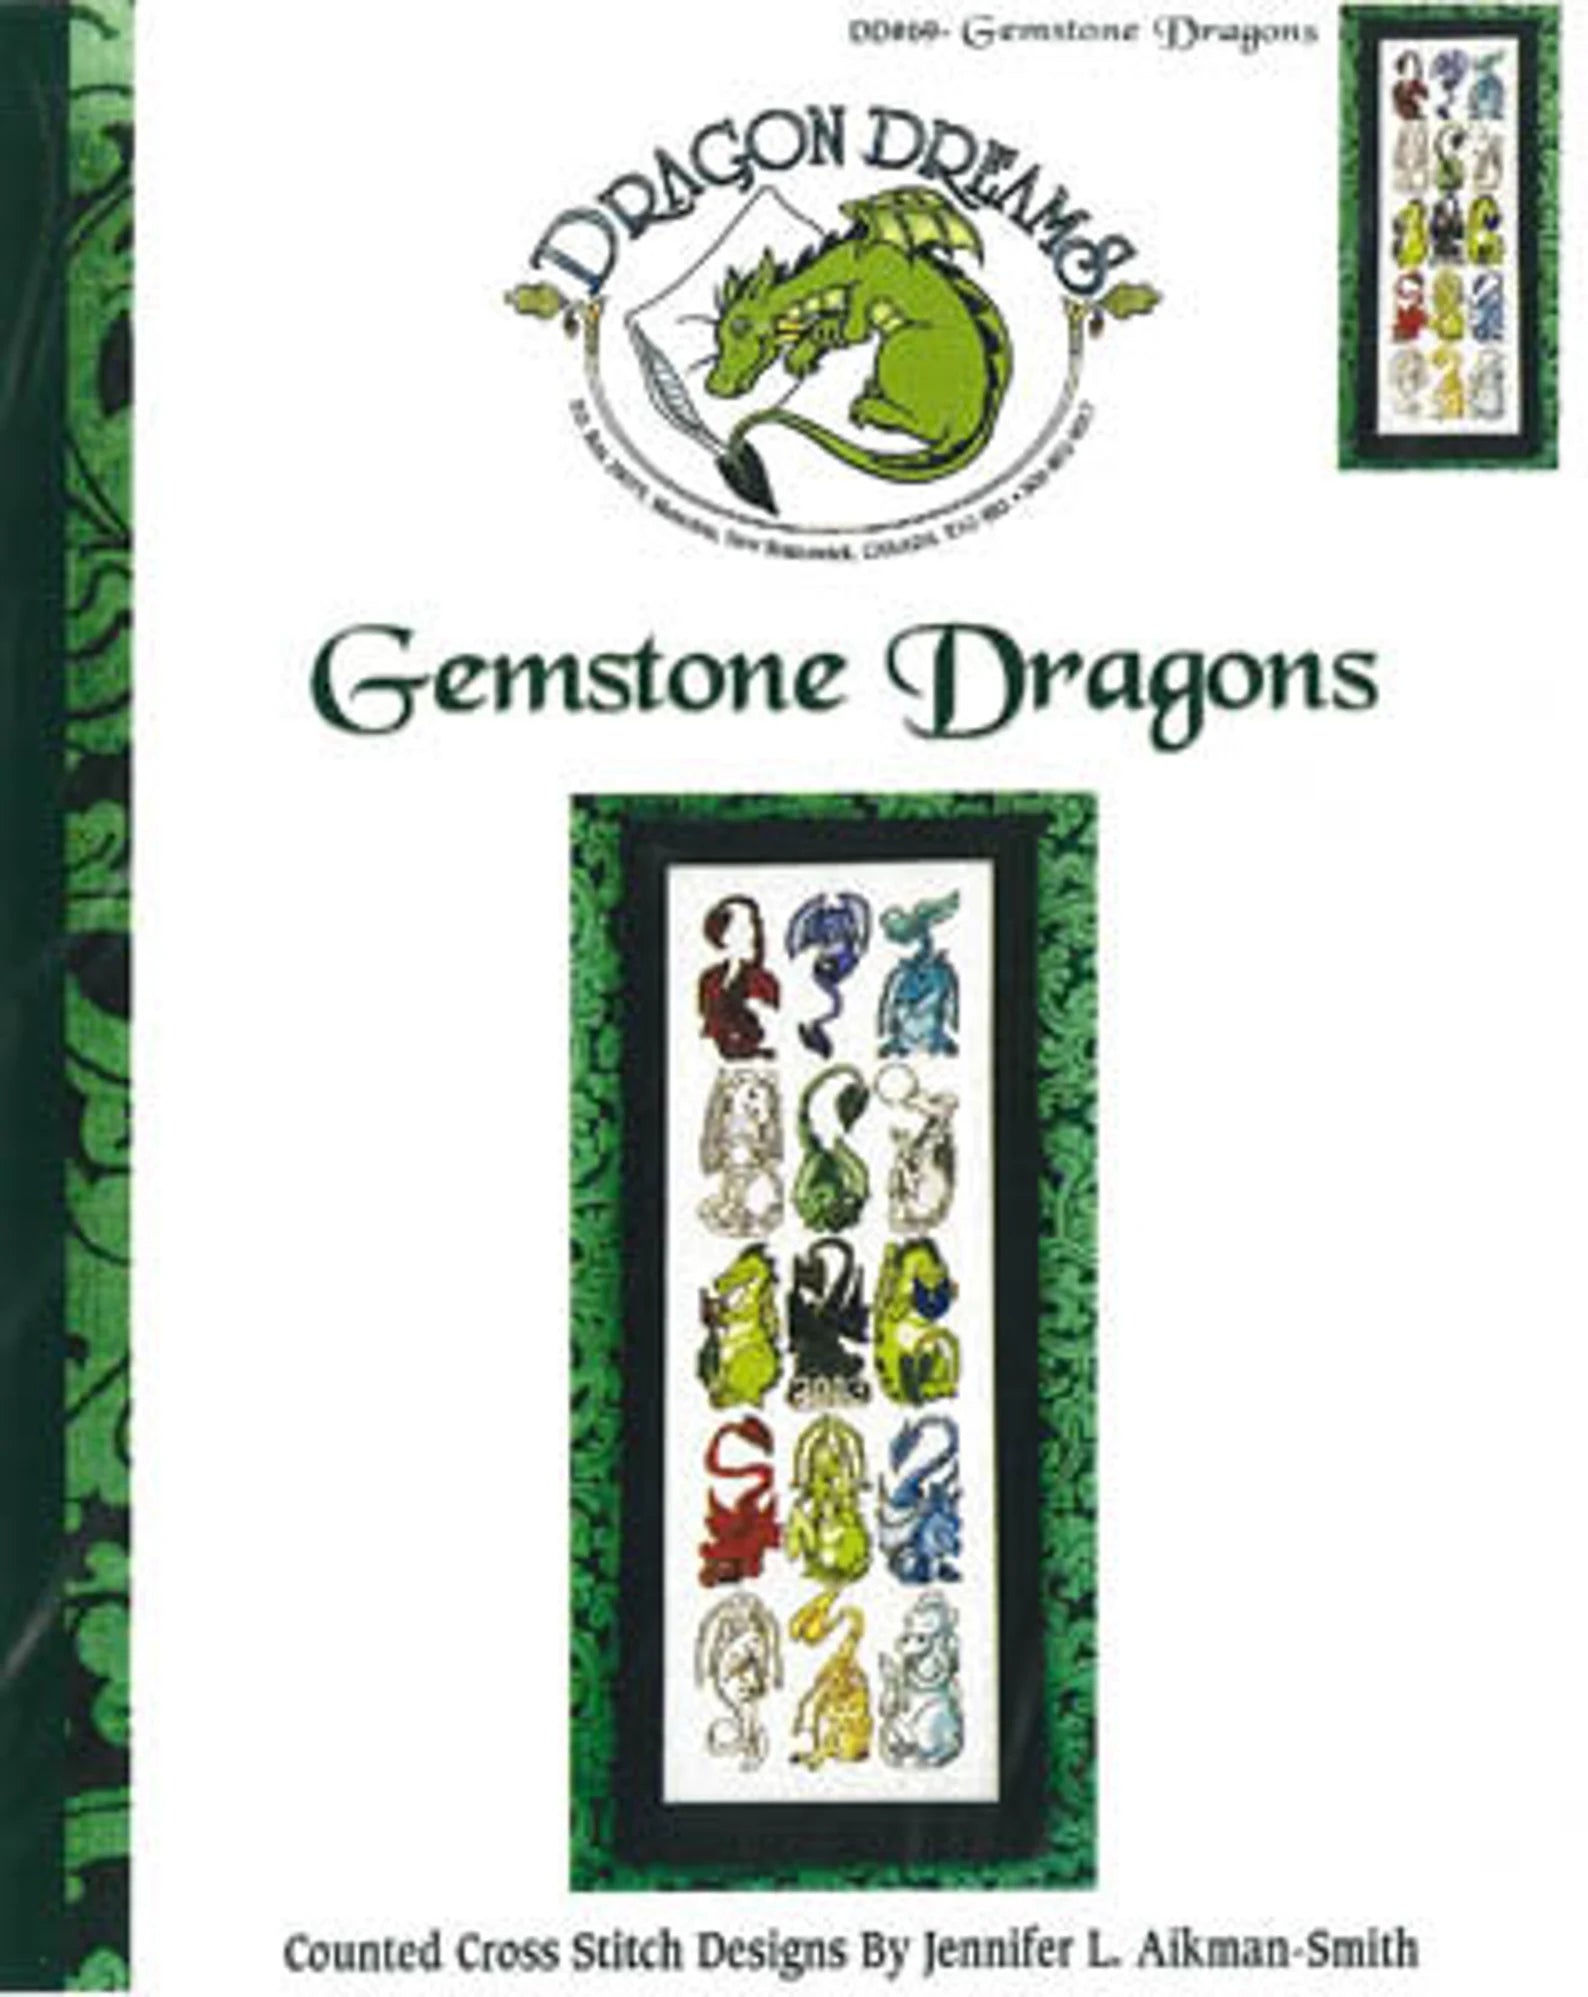 Gemstone Dragons by Dragon Dreams